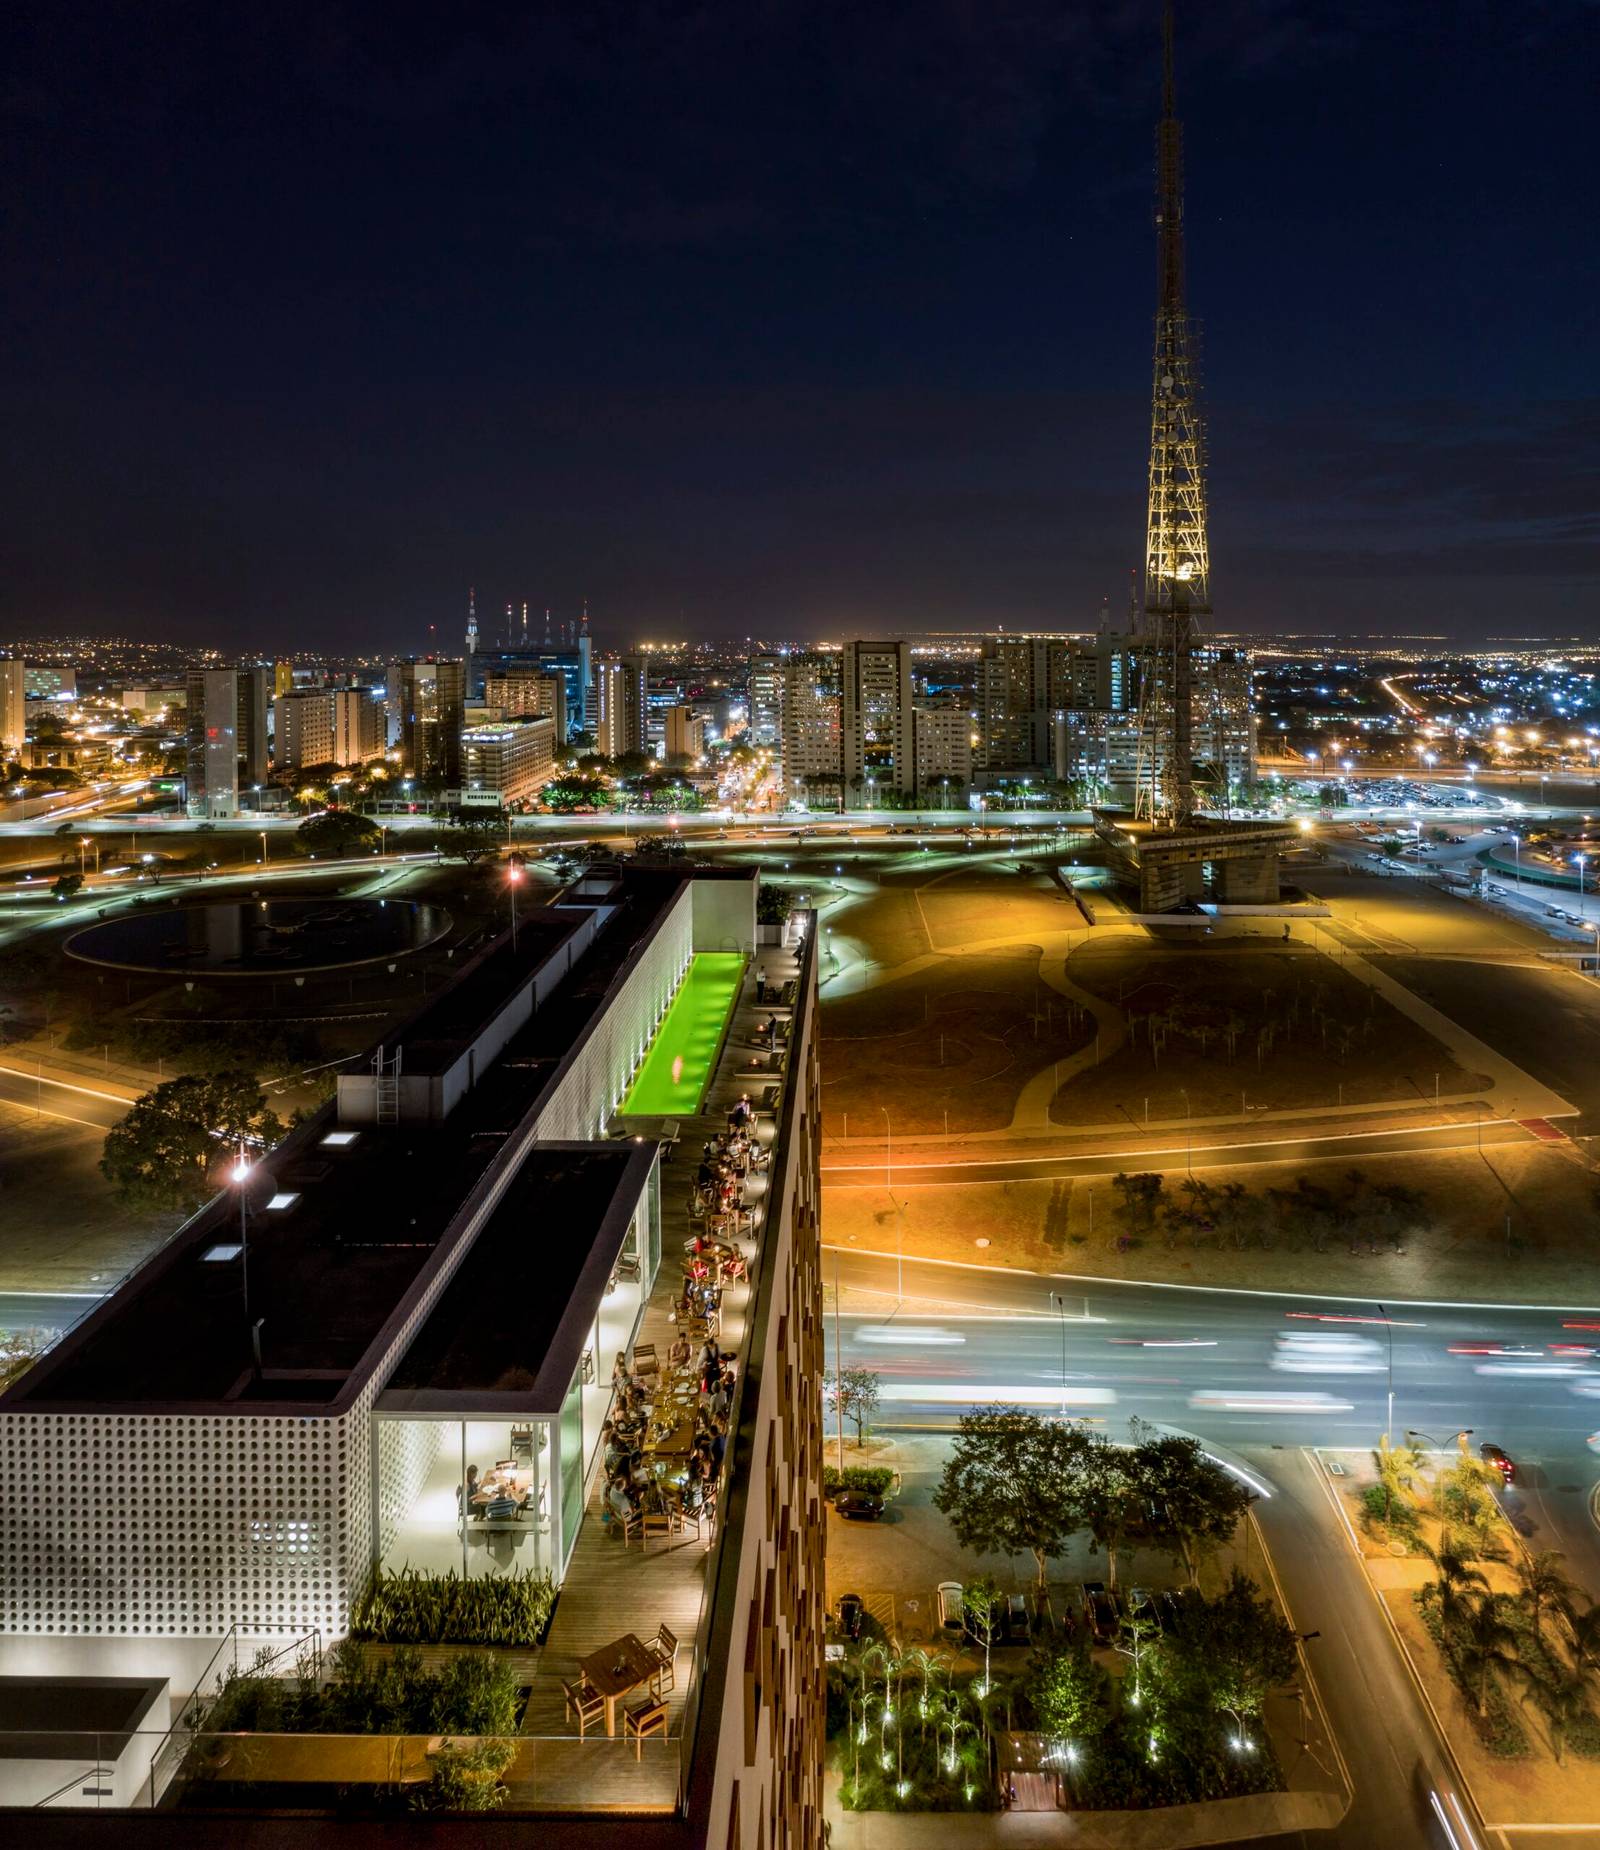 Hotelaria de Brasília projeta 100% de ocupação na posse presidencial